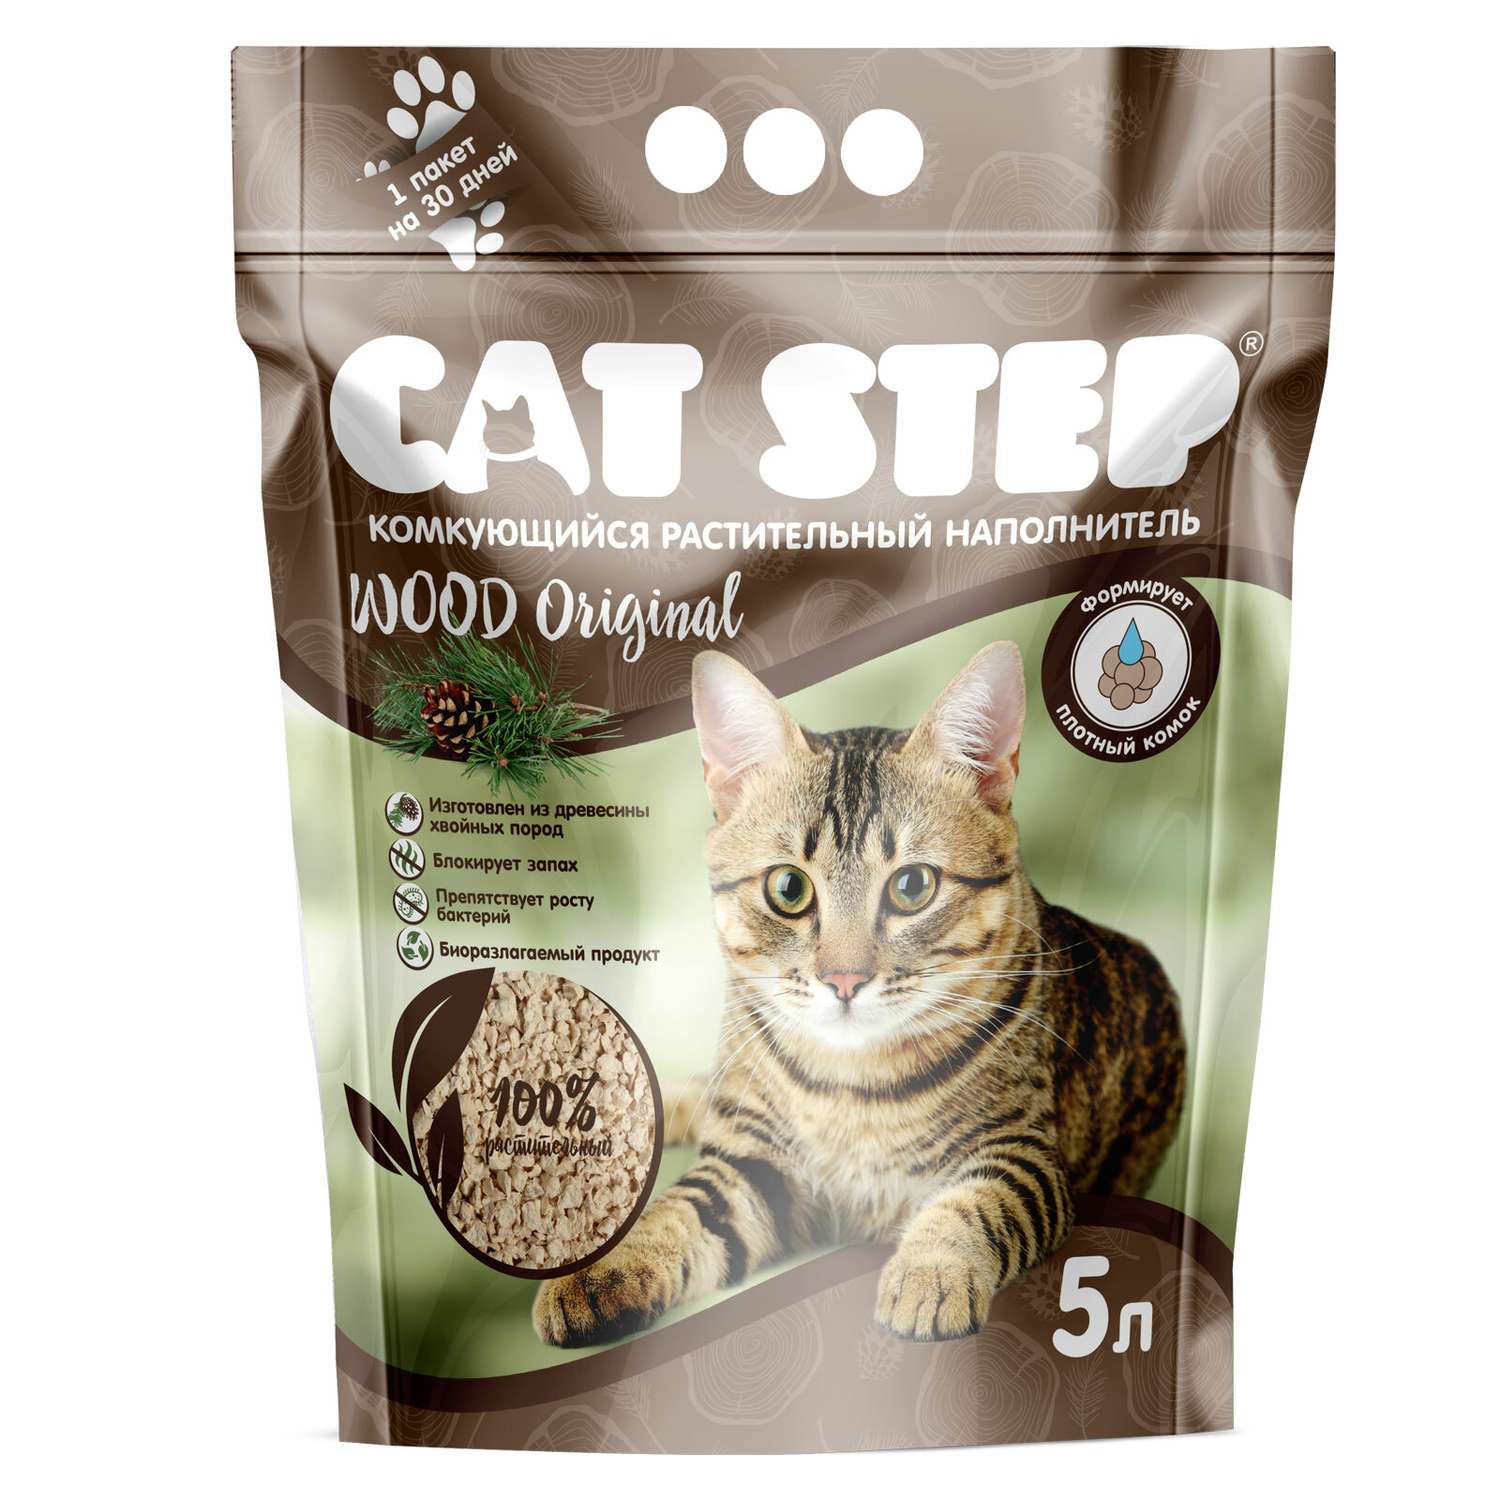 Наполнитель для кошек Cat Step Wood Original комкующийся растительный 5л - фото 1